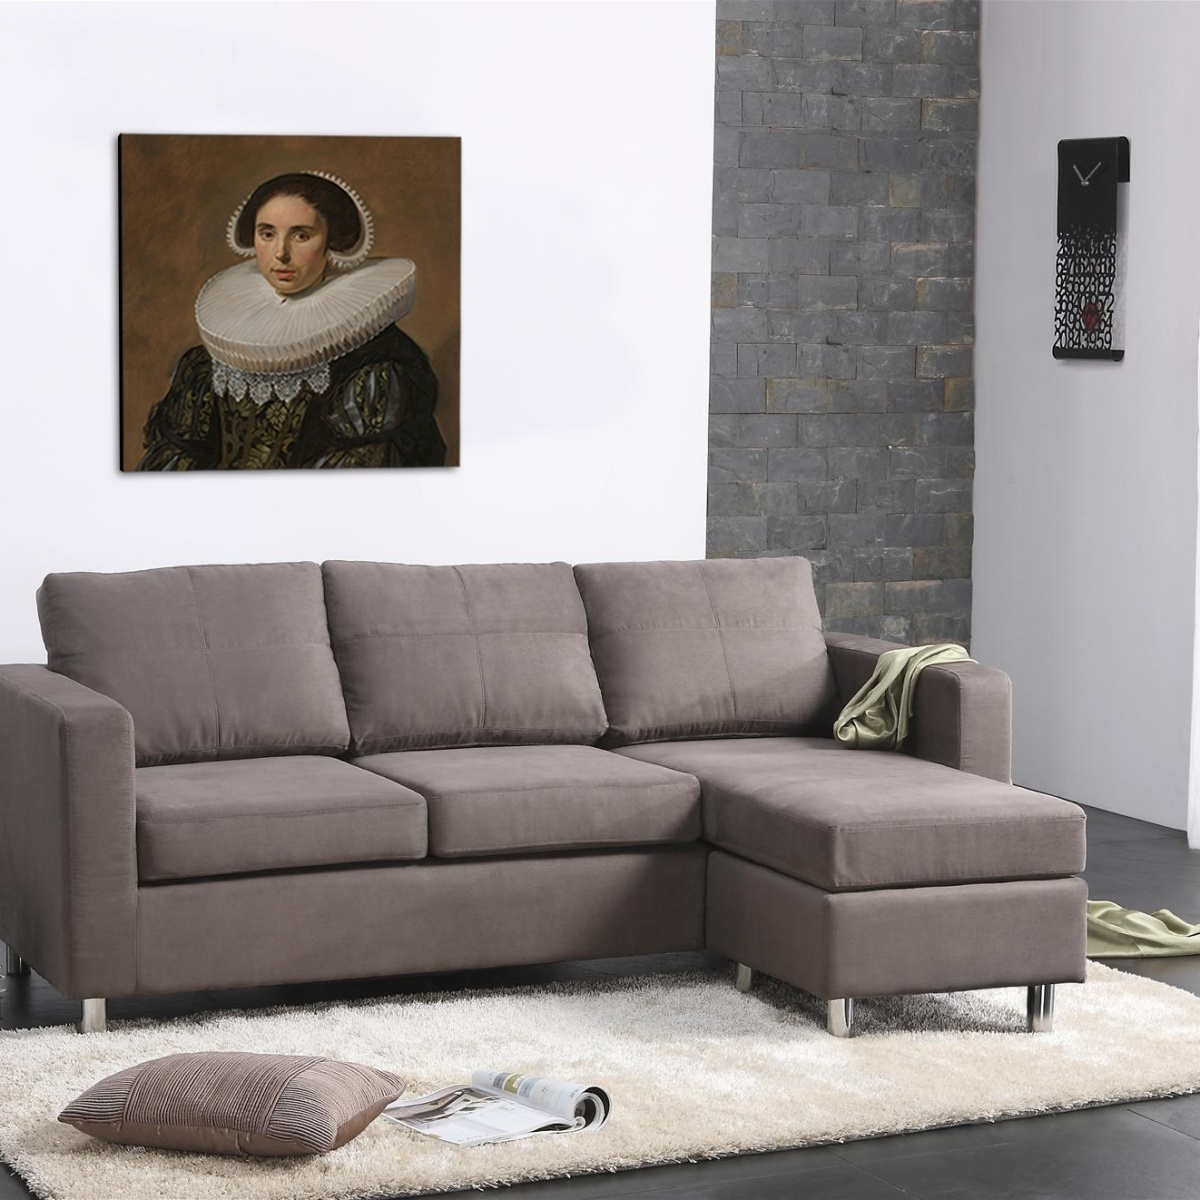 Portret van een vrouw - Frans Hals 2